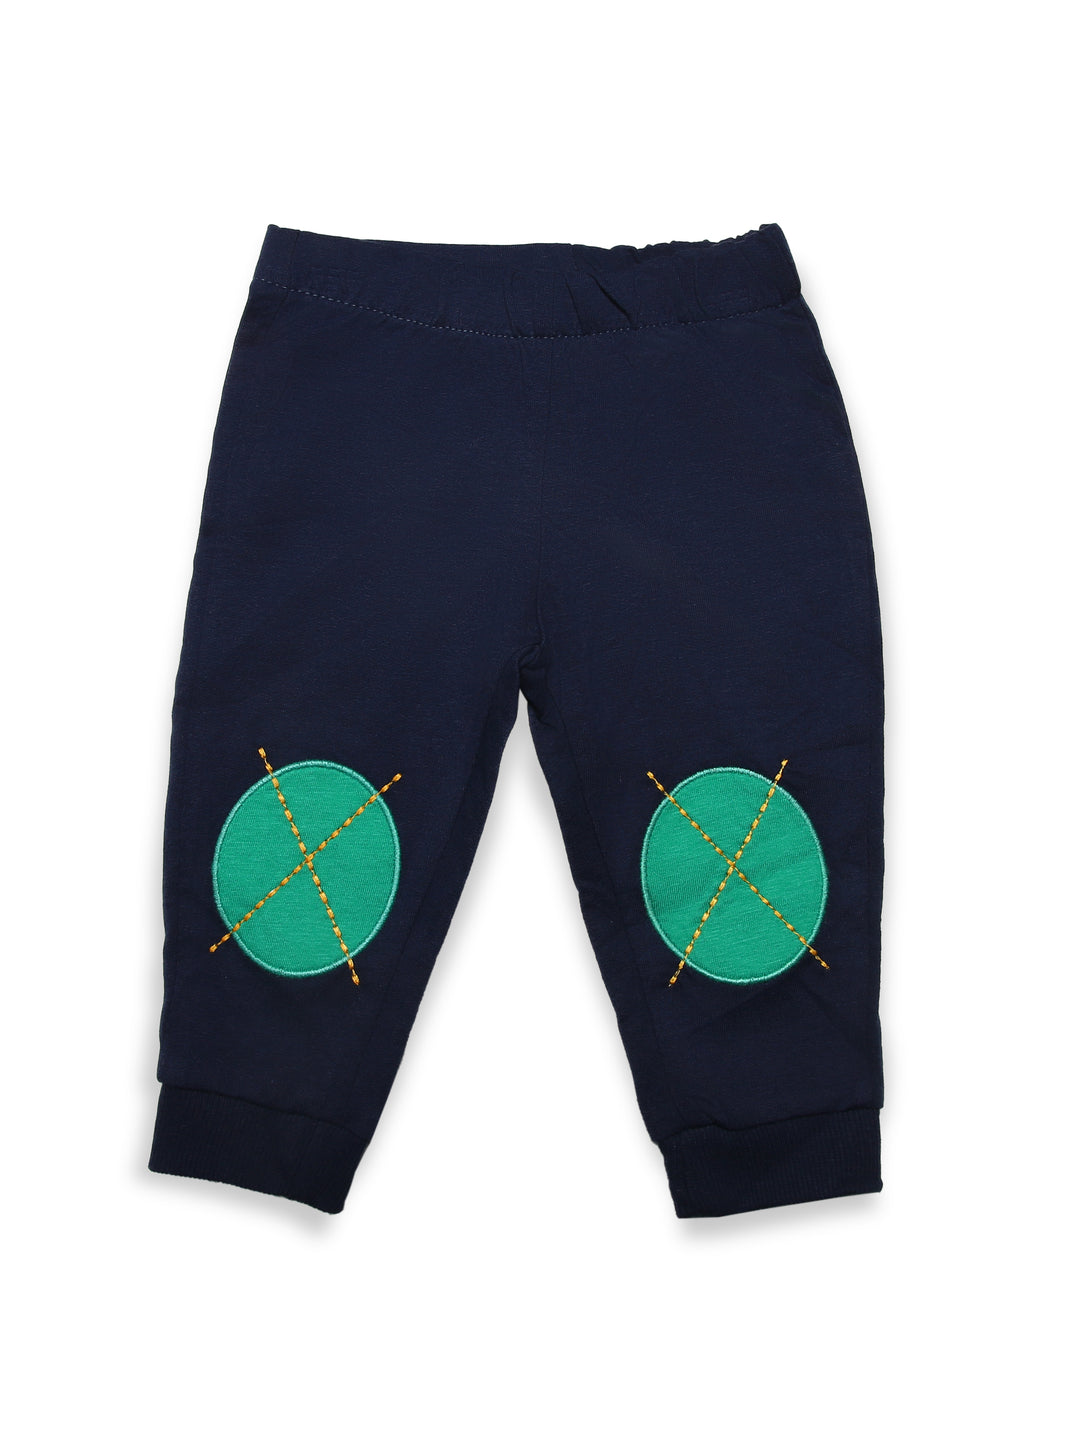 Penguim Boys Pajama Suit Cotton L/S 2Pcs #P211139 (W-22)